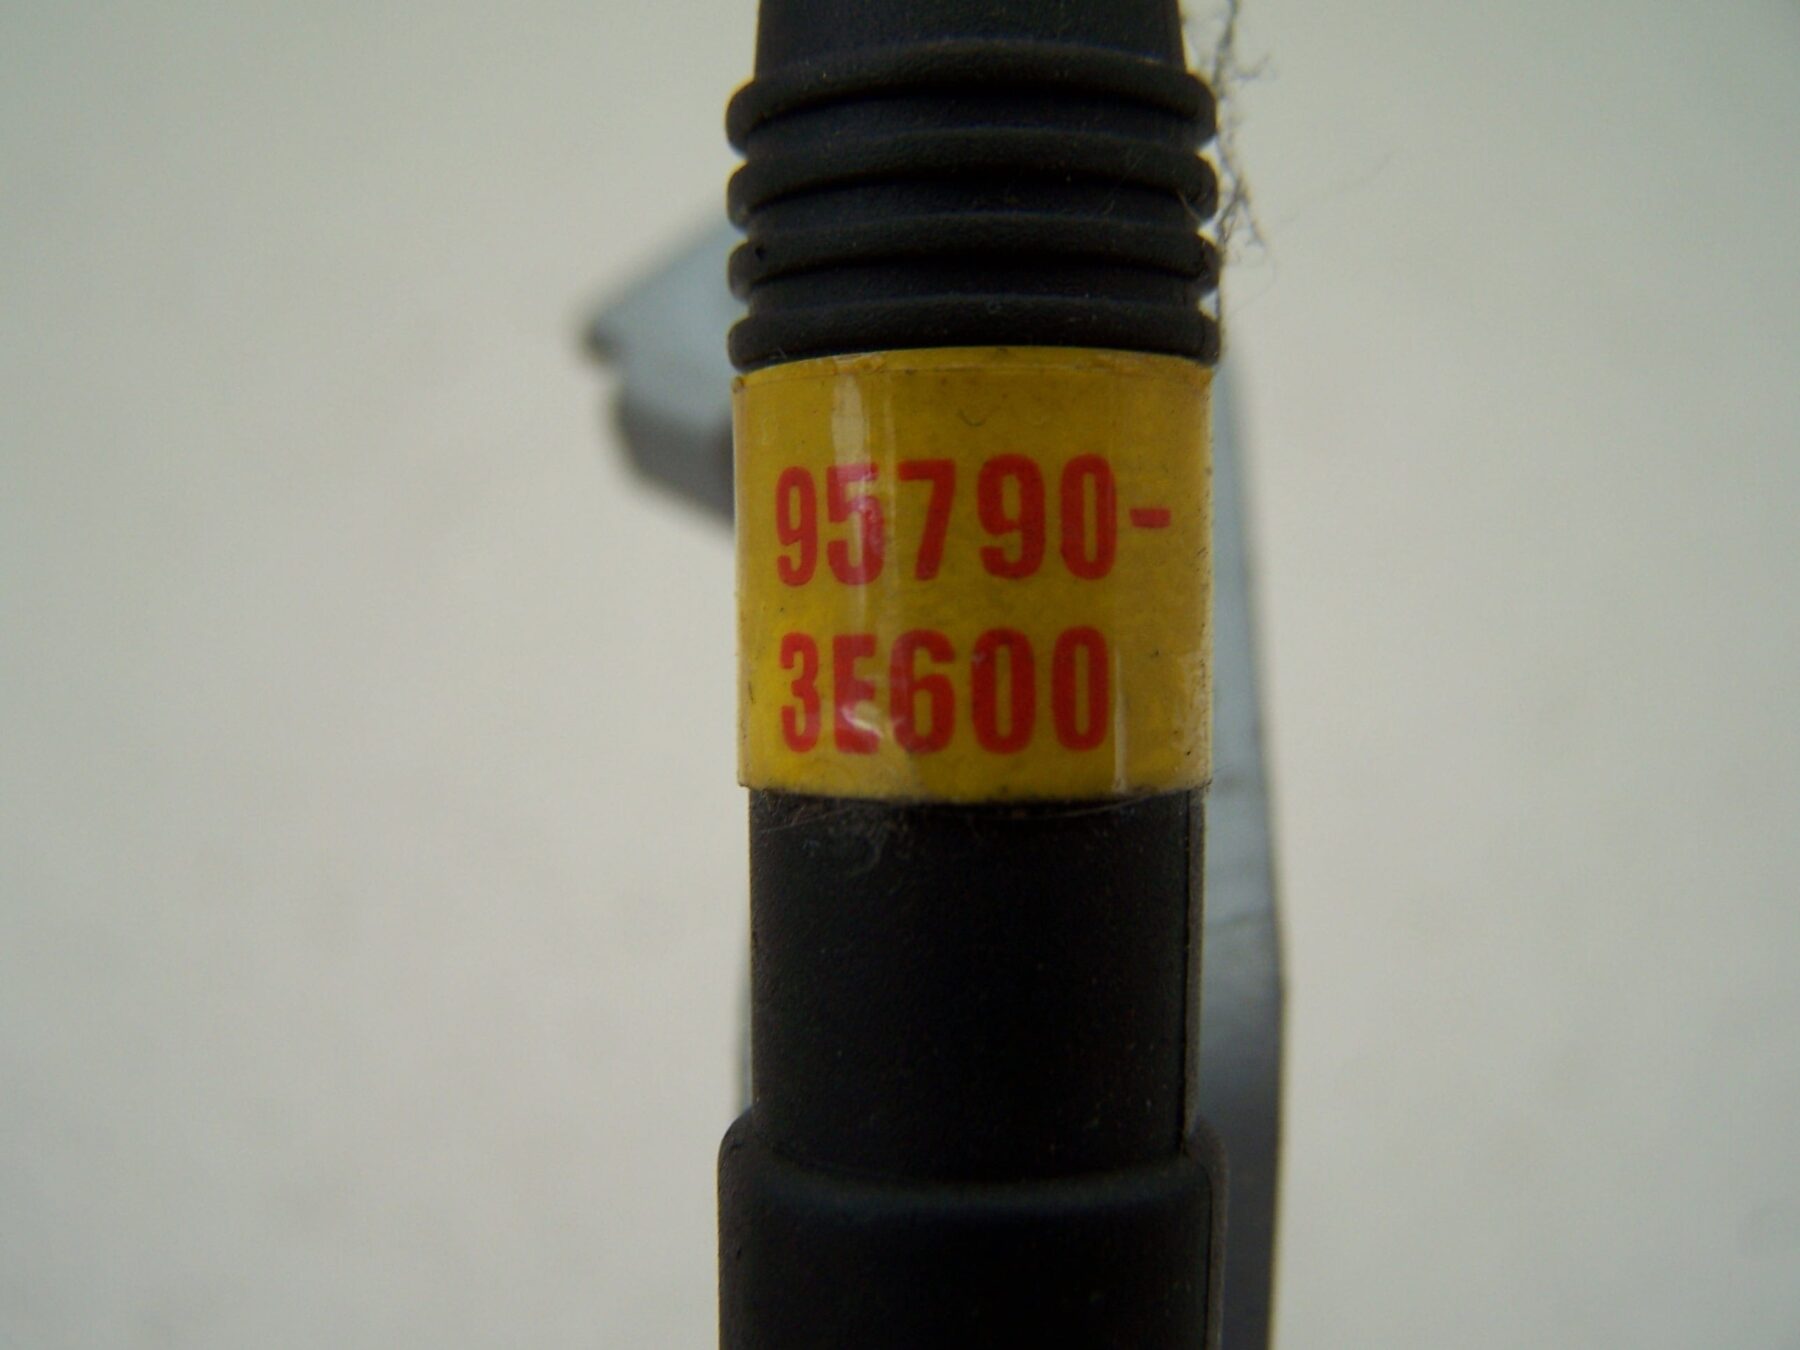 Kia Sorento Central locking antenna 95790-3E600 (2003-2006)